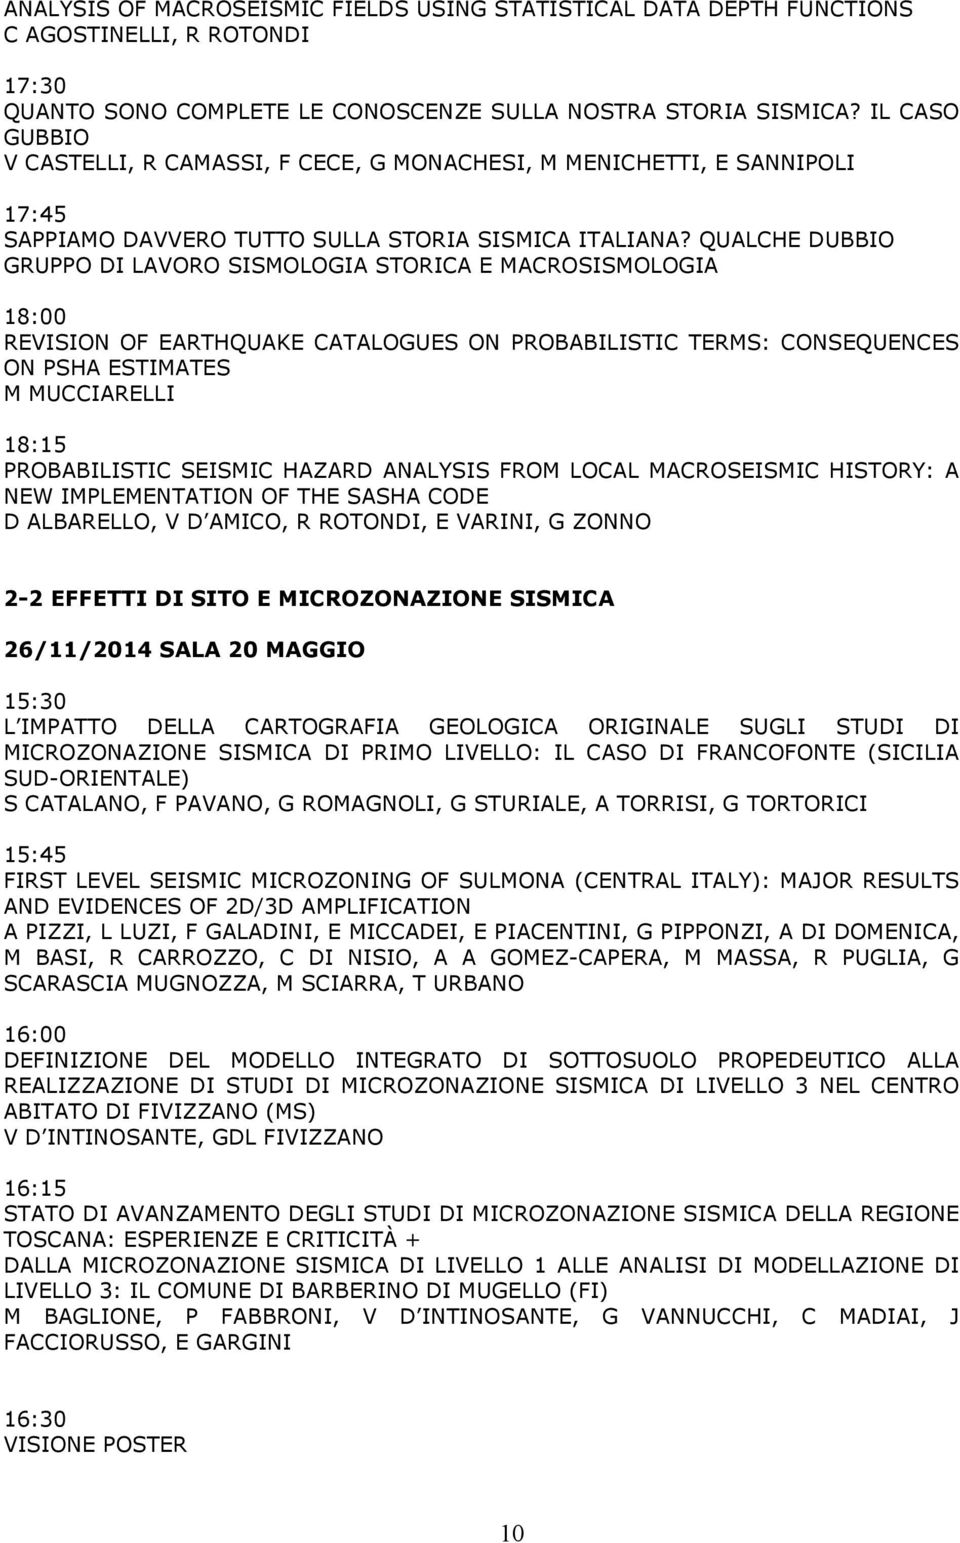 QUALCHE DUBBIO GRUPPO DI LAVORO SISMOLOGIA STORICA E MACROSISMOLOGIA 18:00 REVISION OF EARTHQUAKE CATALOGUES ON PROBABILISTIC TERMS: CONSEQUENCES ON PSHA ESTIMATES M MUCCIARELLI 18:15 PROBABILISTIC